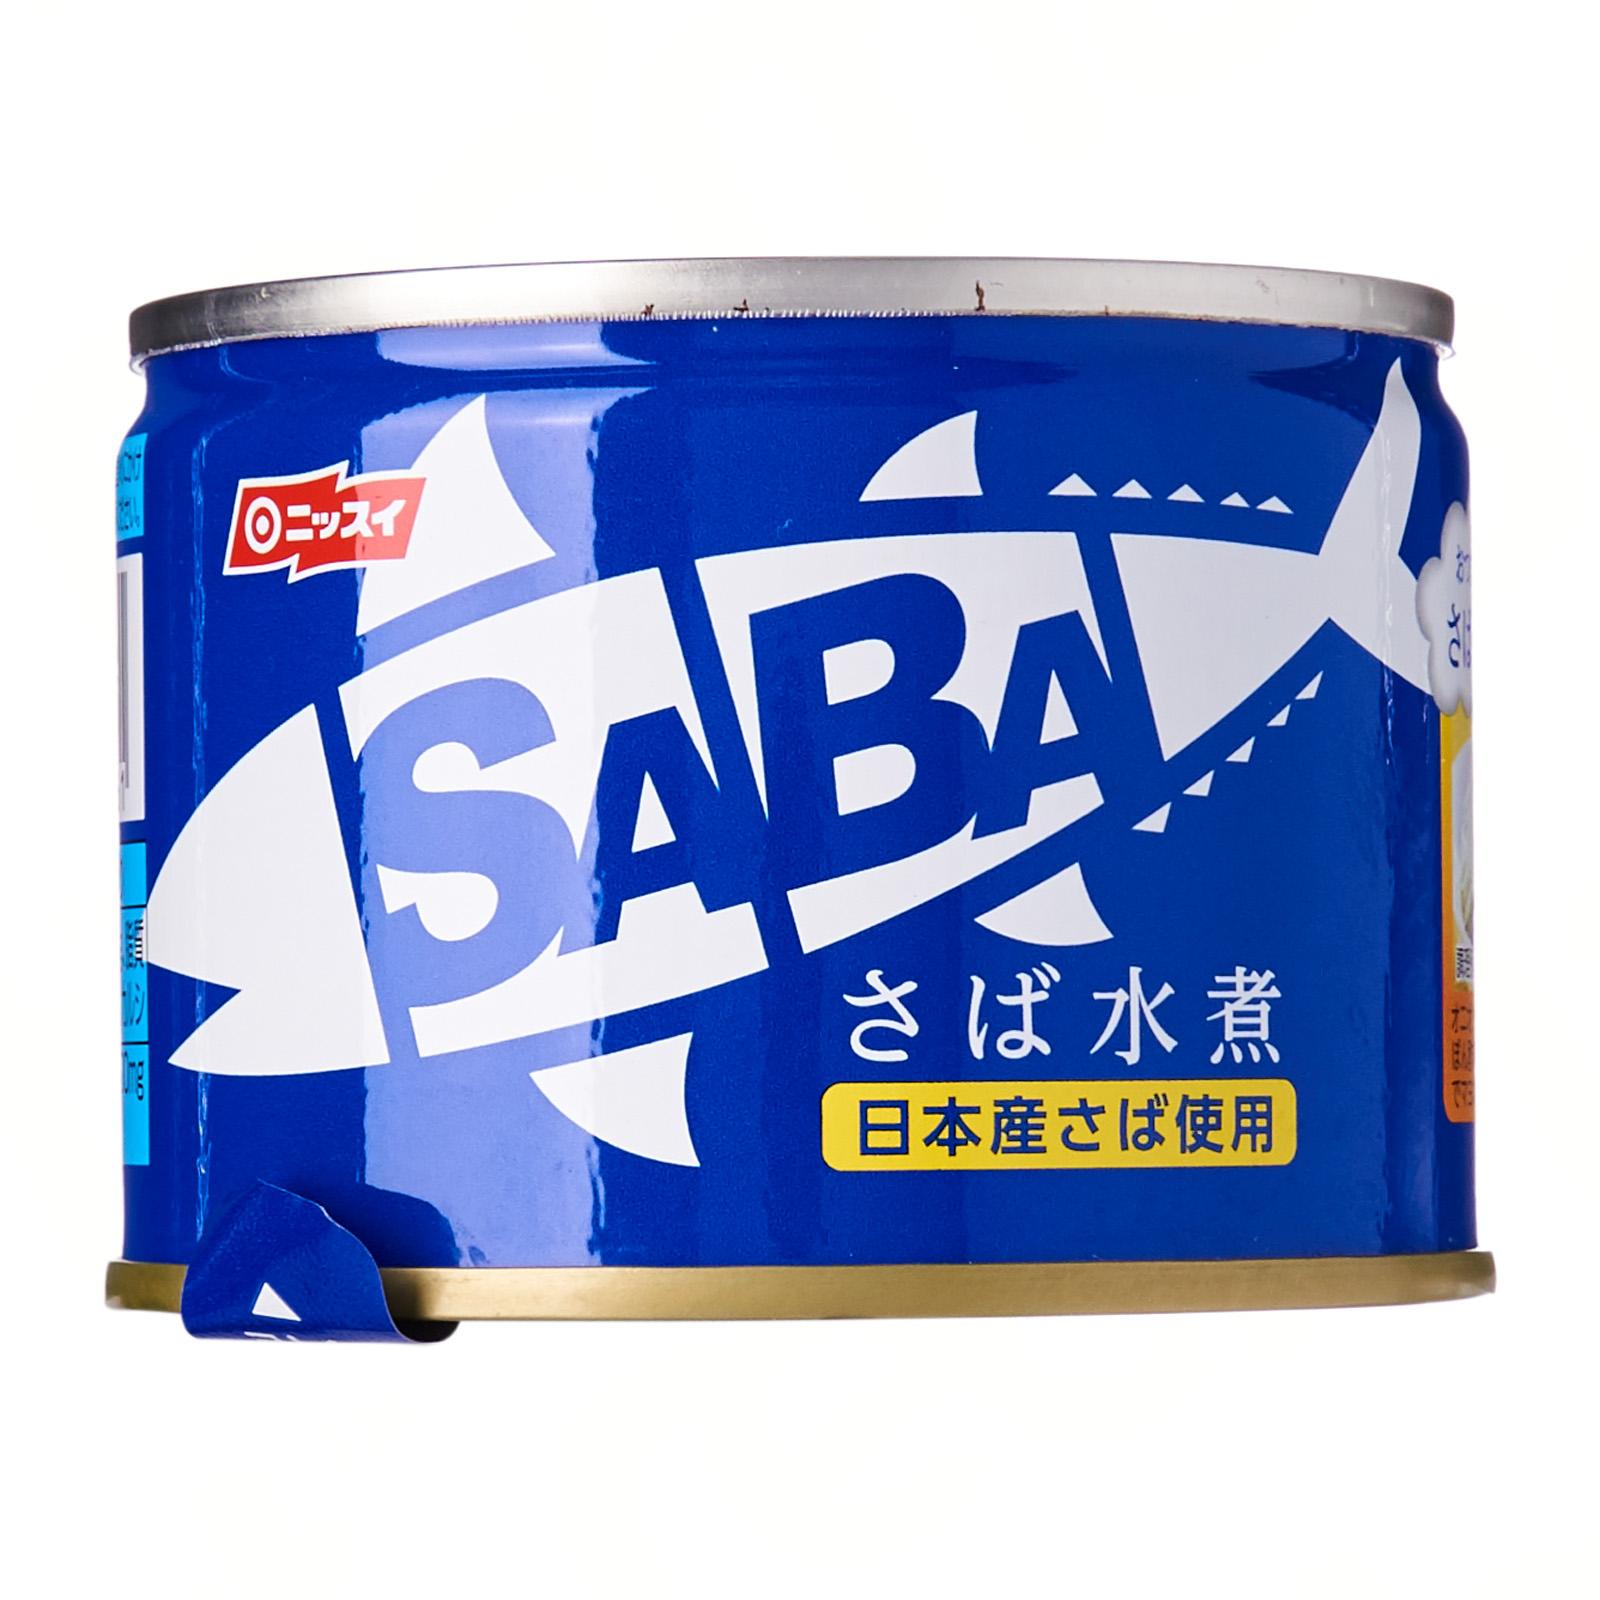 Nissui　Cooked　Kirei　Saba　Mizuni　Japanese　Singapore　Canned　Foods　Mackerel　Lazada